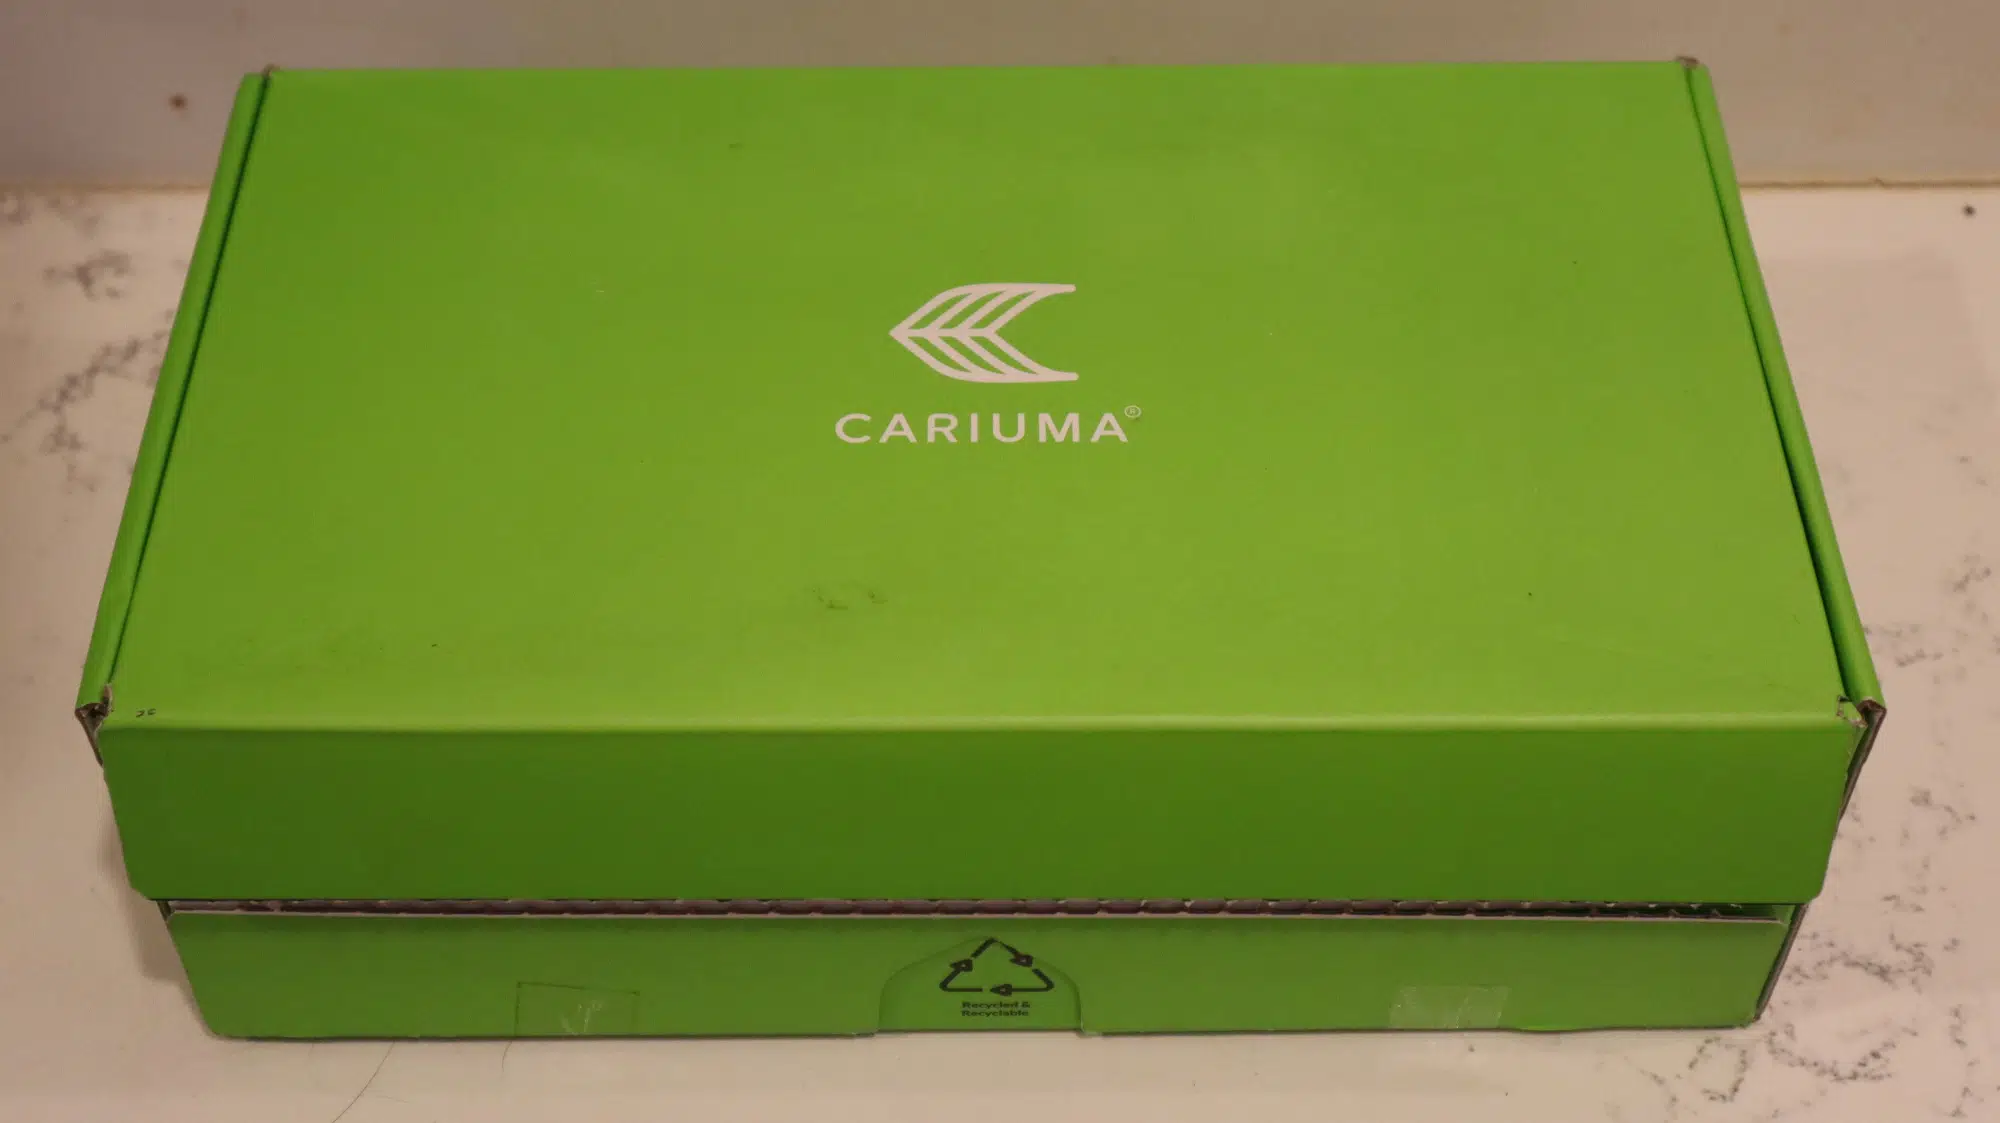 Cariuma box